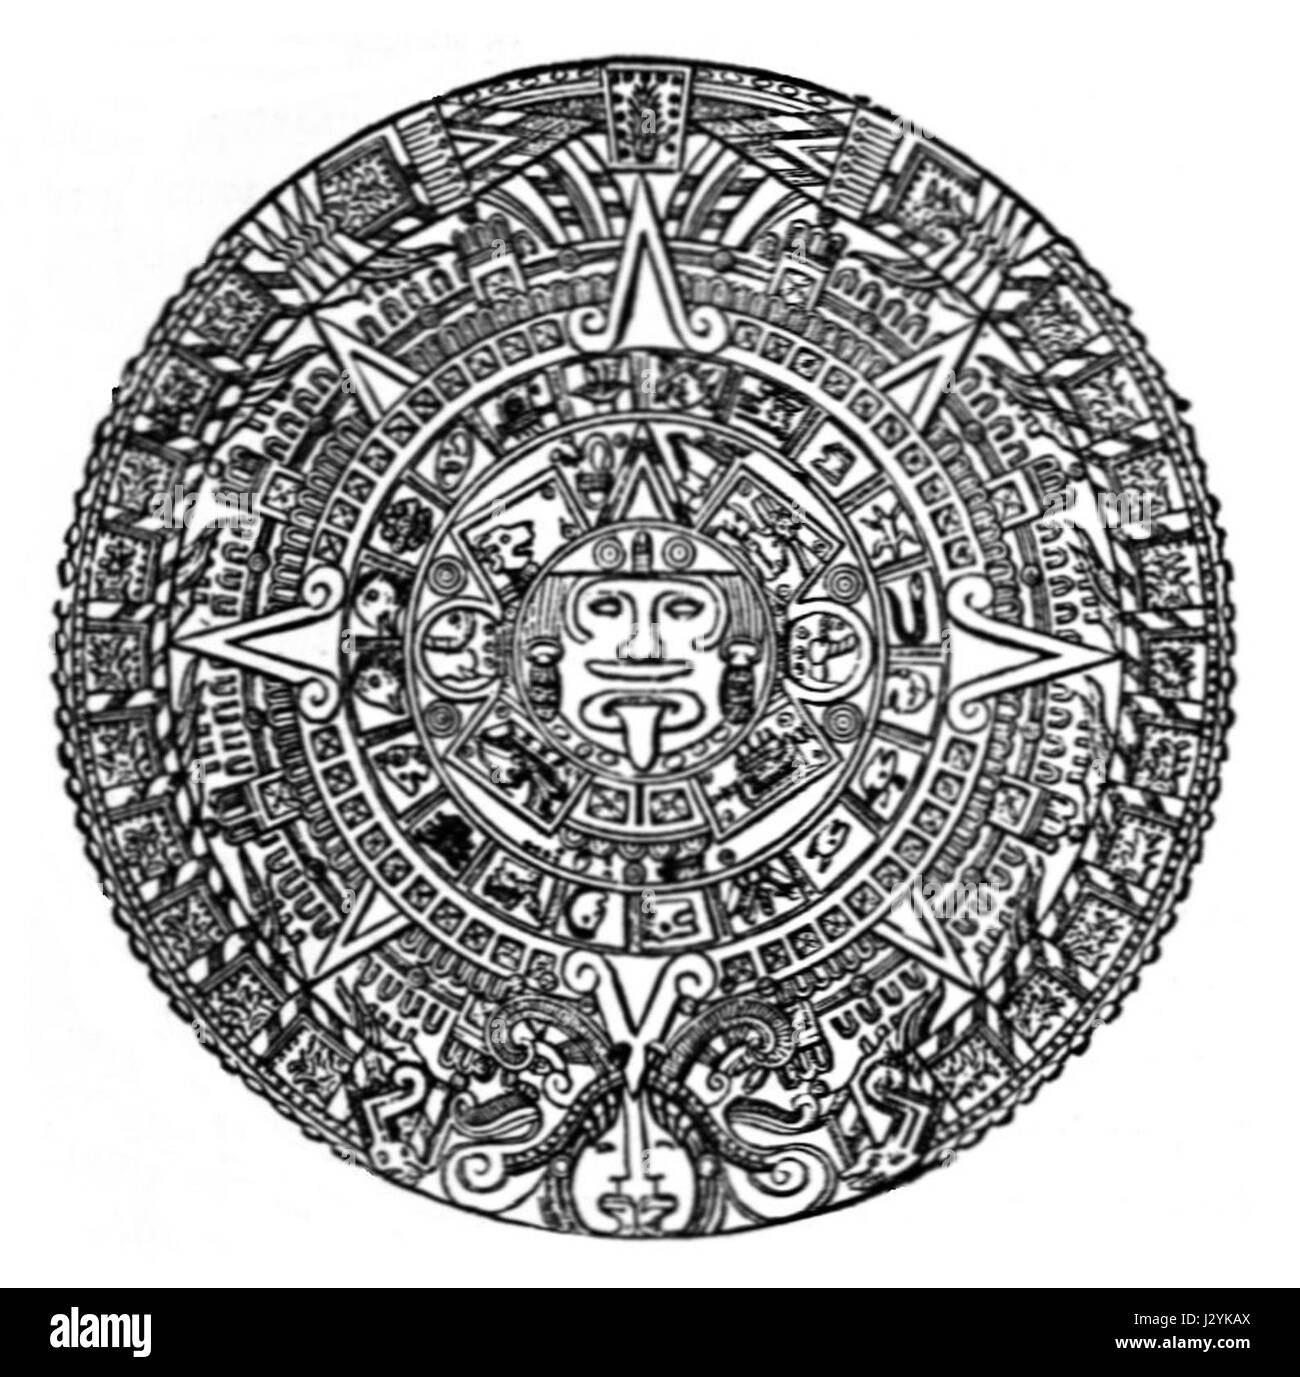 Сюжет и композиция календарь майя. Камень солнца ацтеков. Календарь ацтеков камень солнца амулет. Тональпоуалли календарь ацтеков. Календарь Майя.